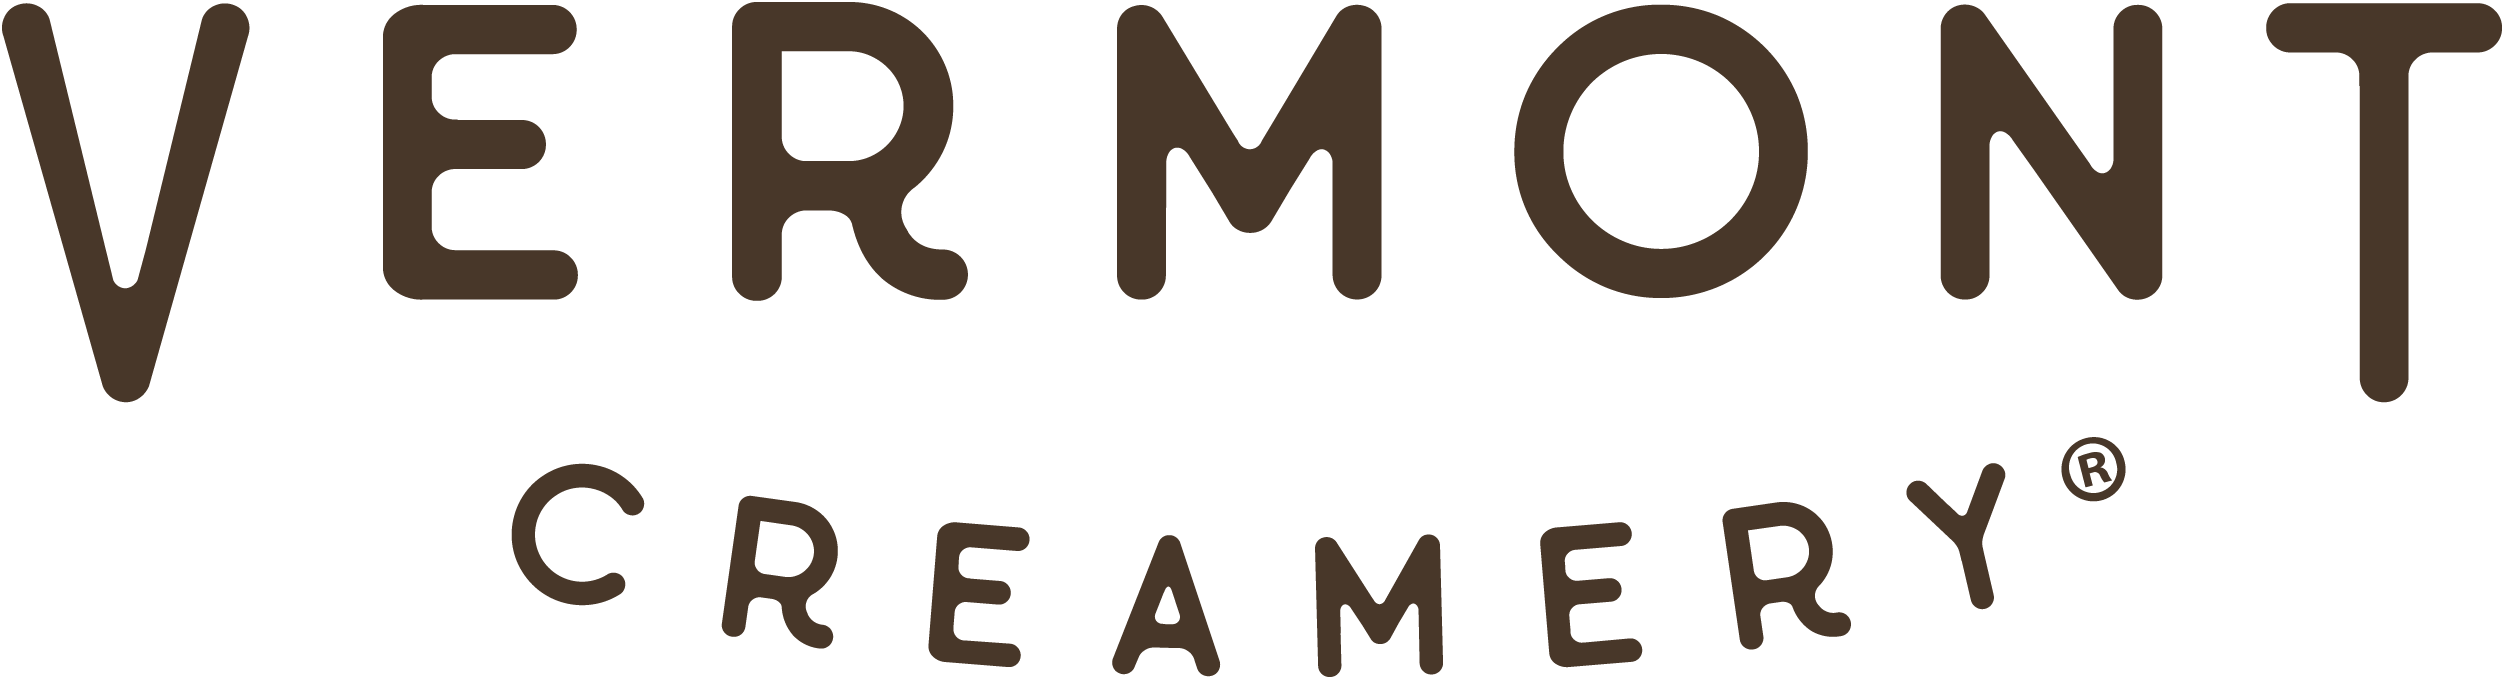 Vermont Creamery Logo